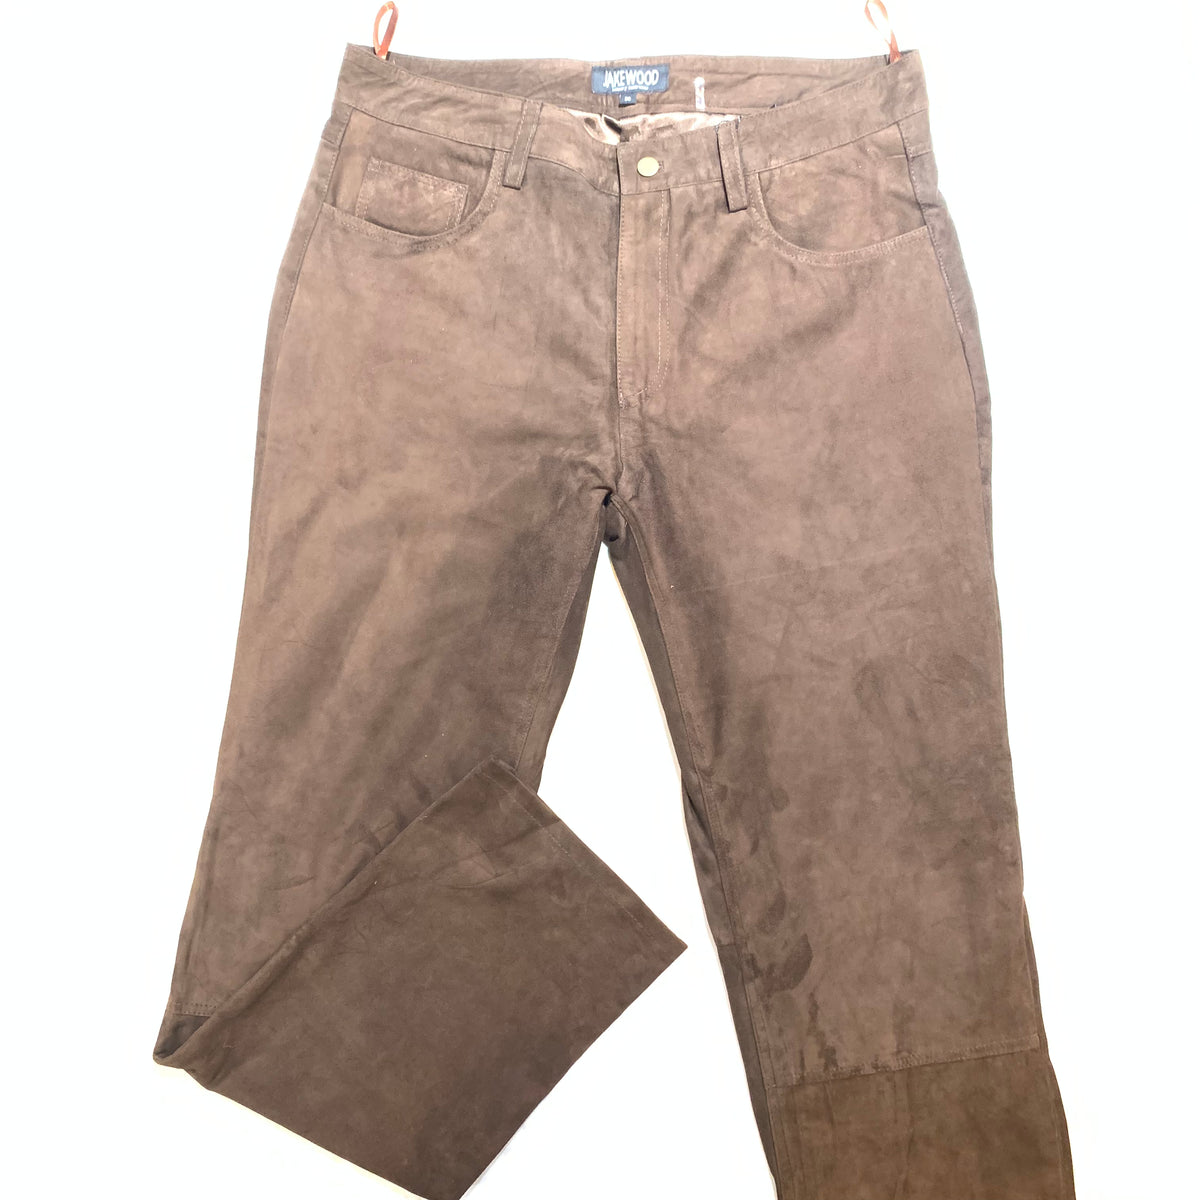 Kashani Men's Chocolate Brown Suede Straight Cut Pants - Dudes Boutique